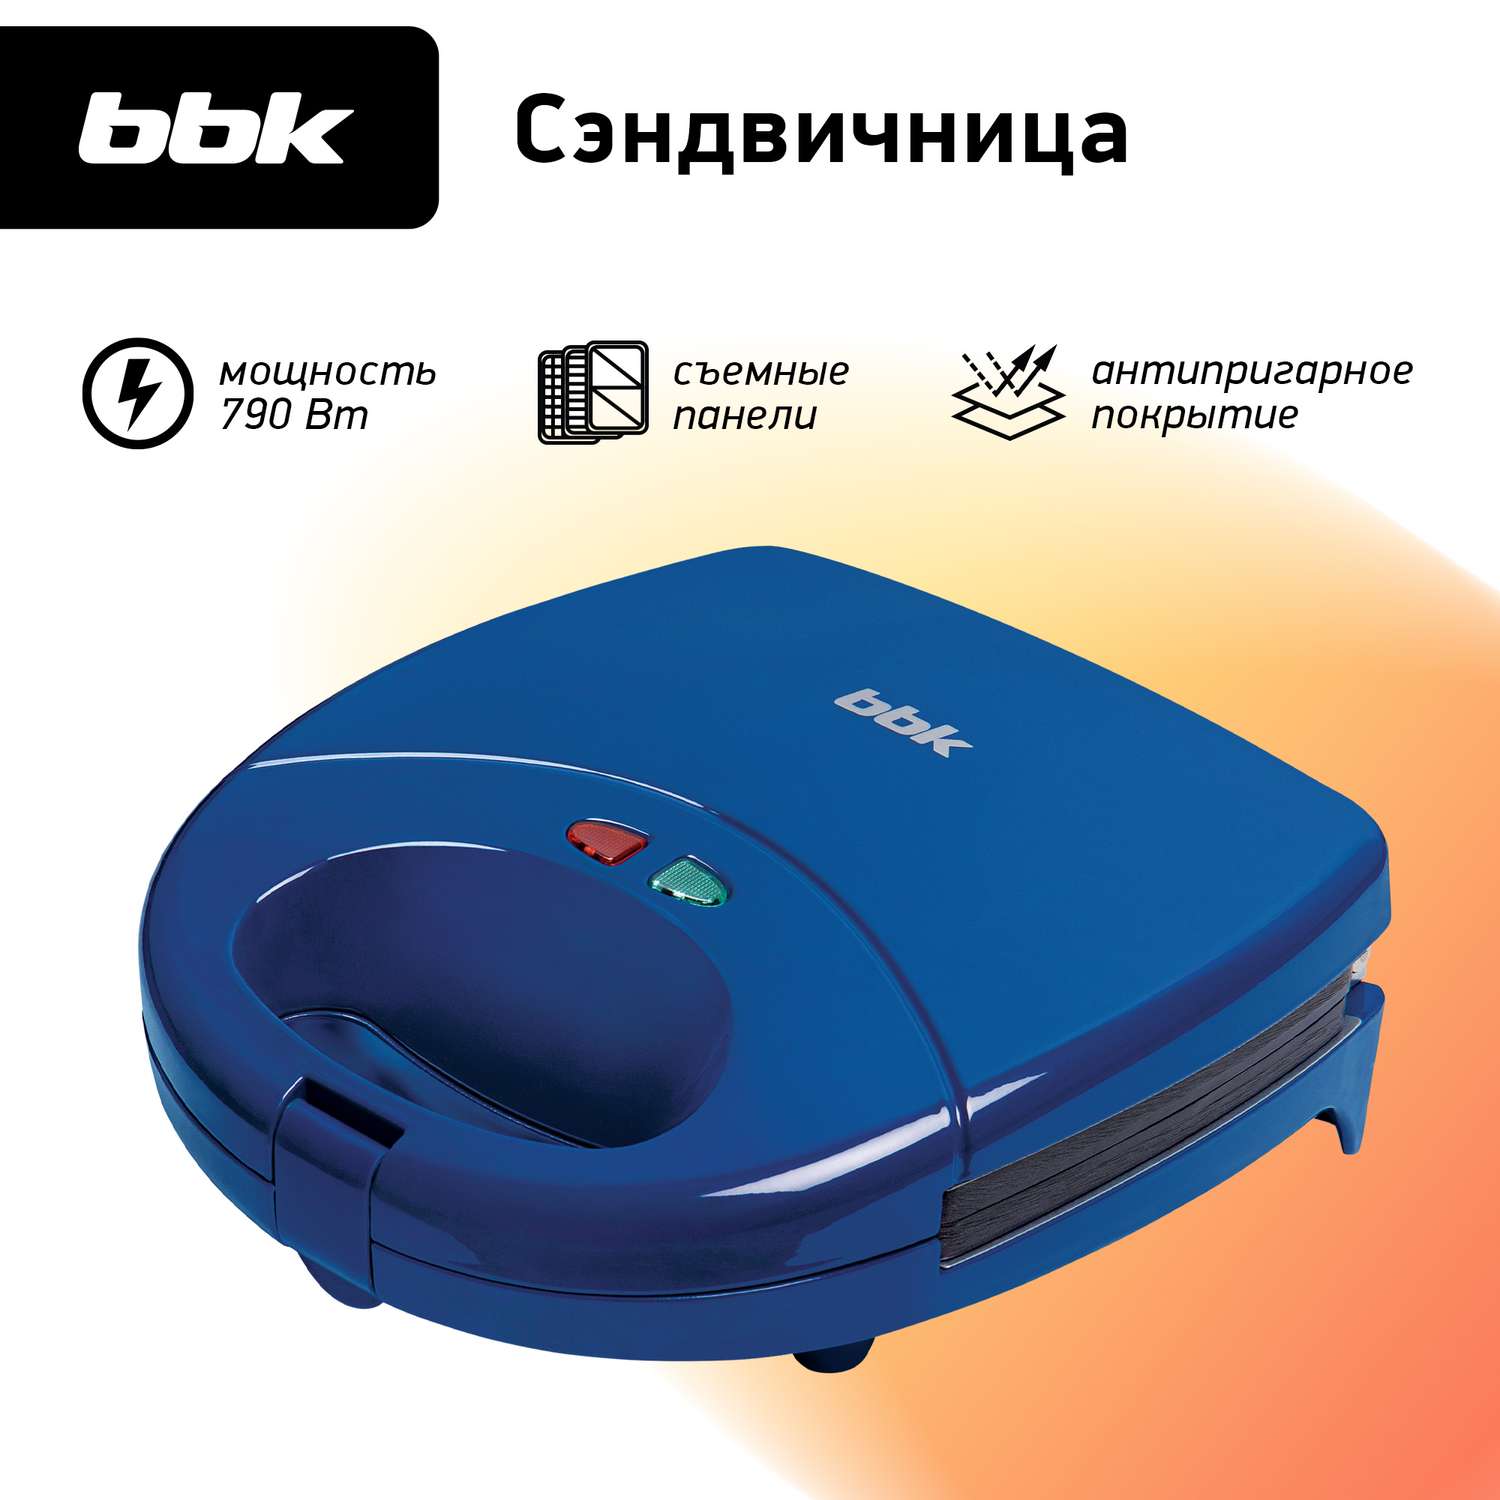 Сэндвичница BBK ES028 синяя мощность 790 Вт съемные панели в комплекте - фото 1